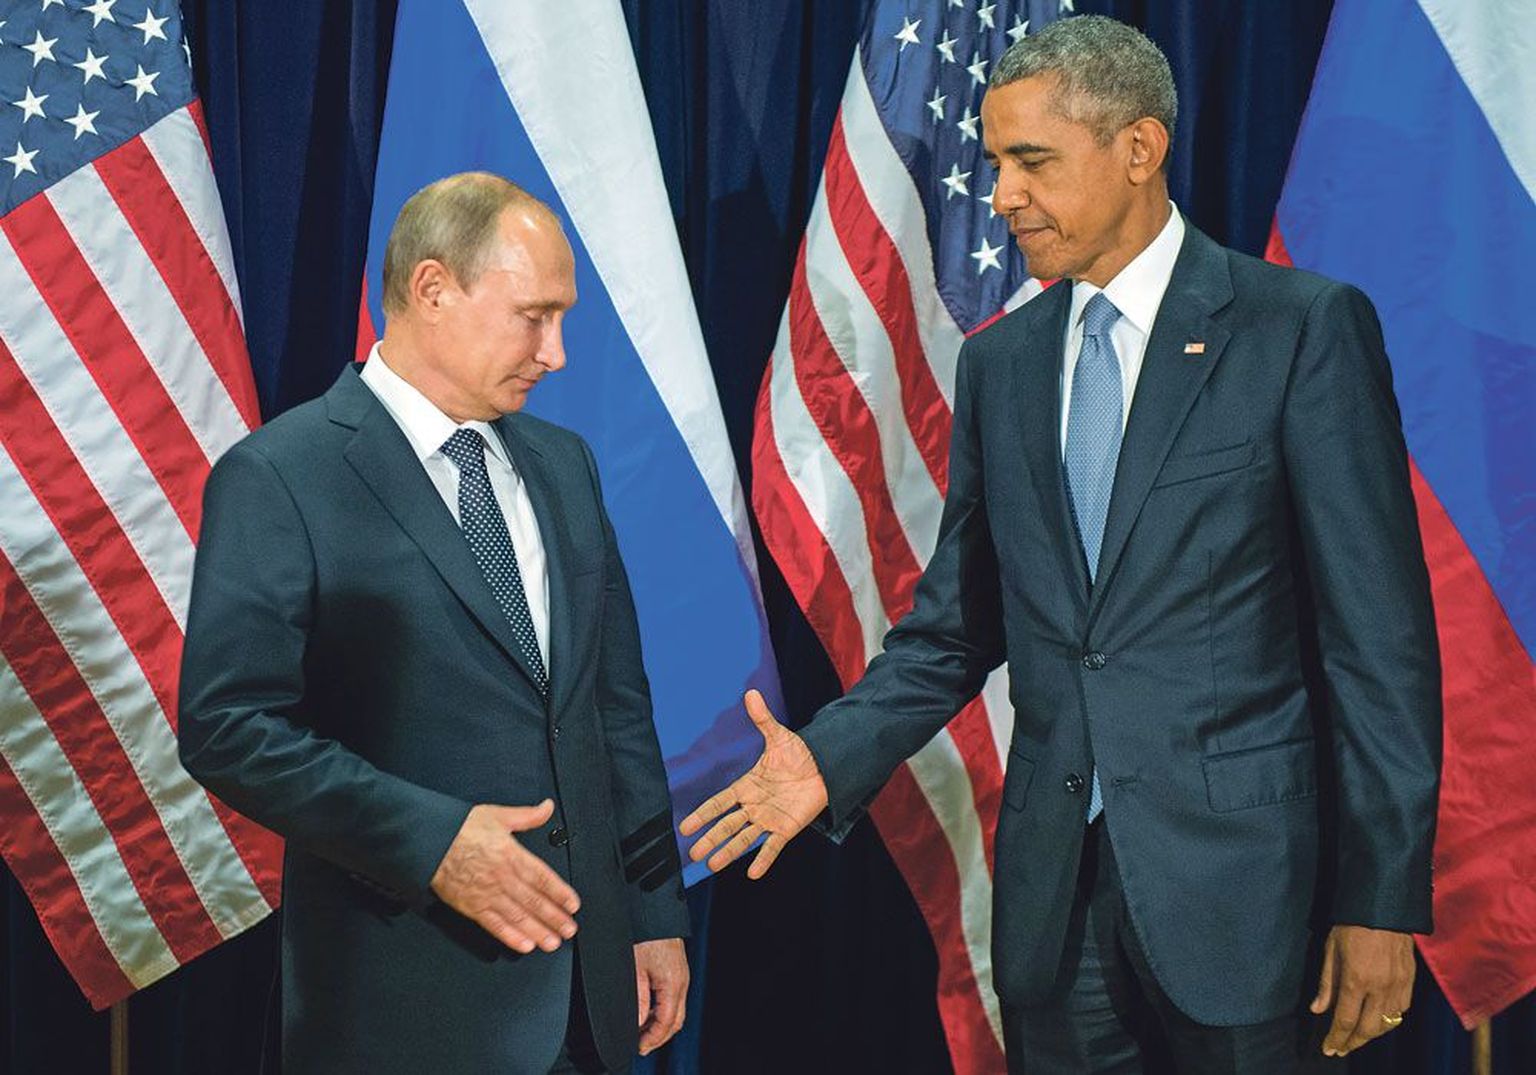 Политика перезагрузки, которую начал проводить Барак Обама в отношениях с Россией, основывалась на поиске возможностей сотруд­ничества и партнерства. Это закончилось провалом, считает журналист Эндрю Э. Крамер.